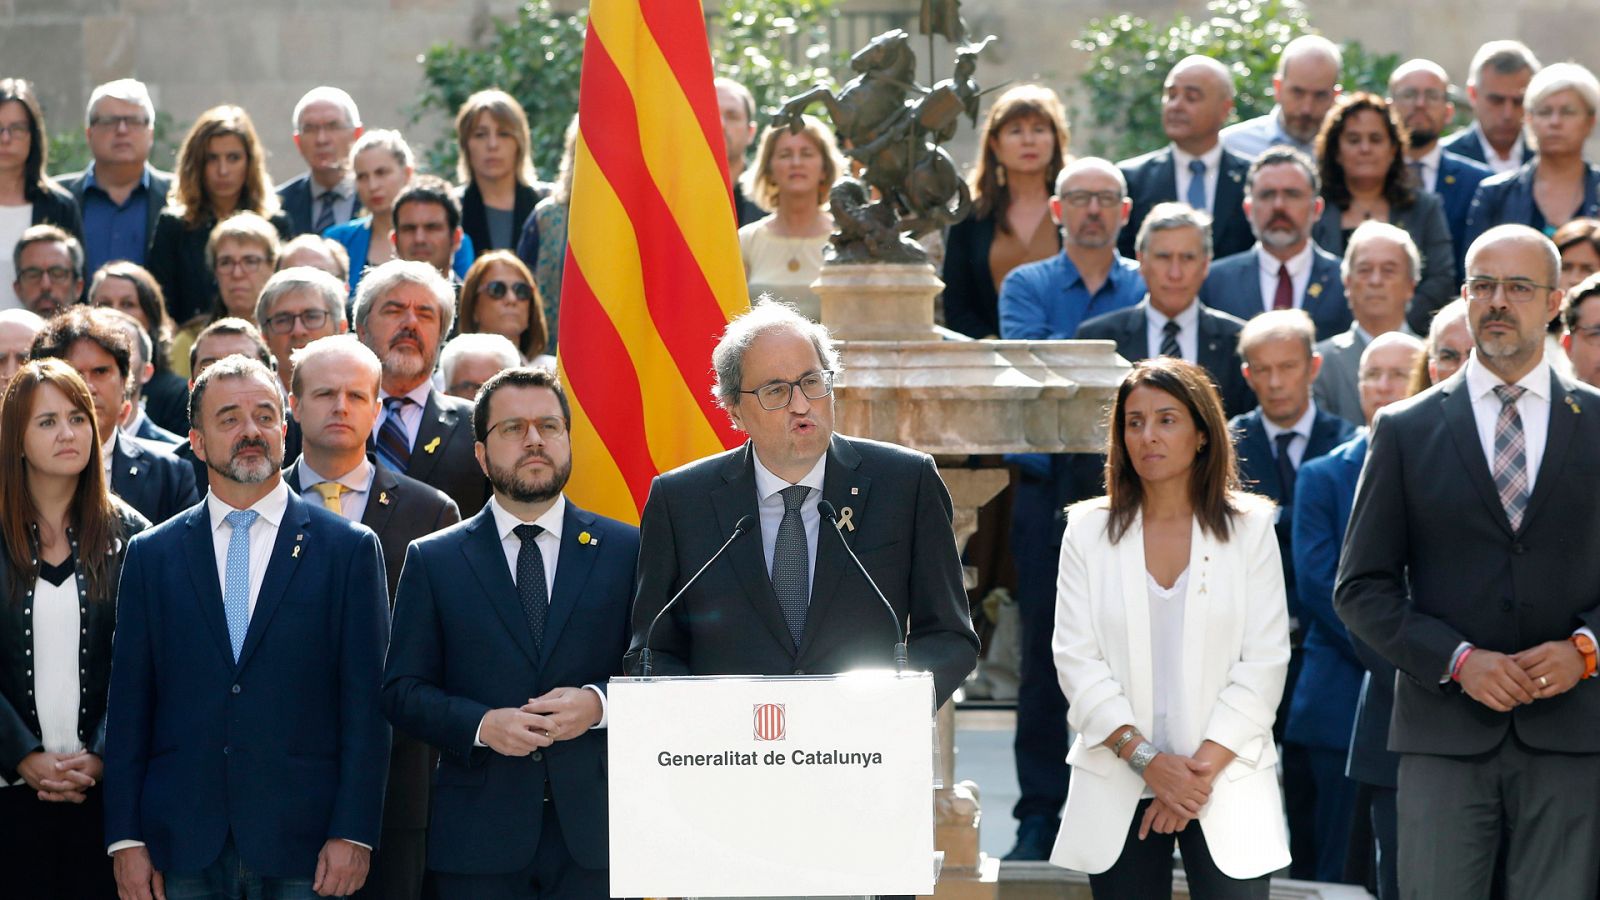 Torra, en el aniversario del 1-O: "La Generalitat se compromete a avanzar sin excusas hacia la república catalana"